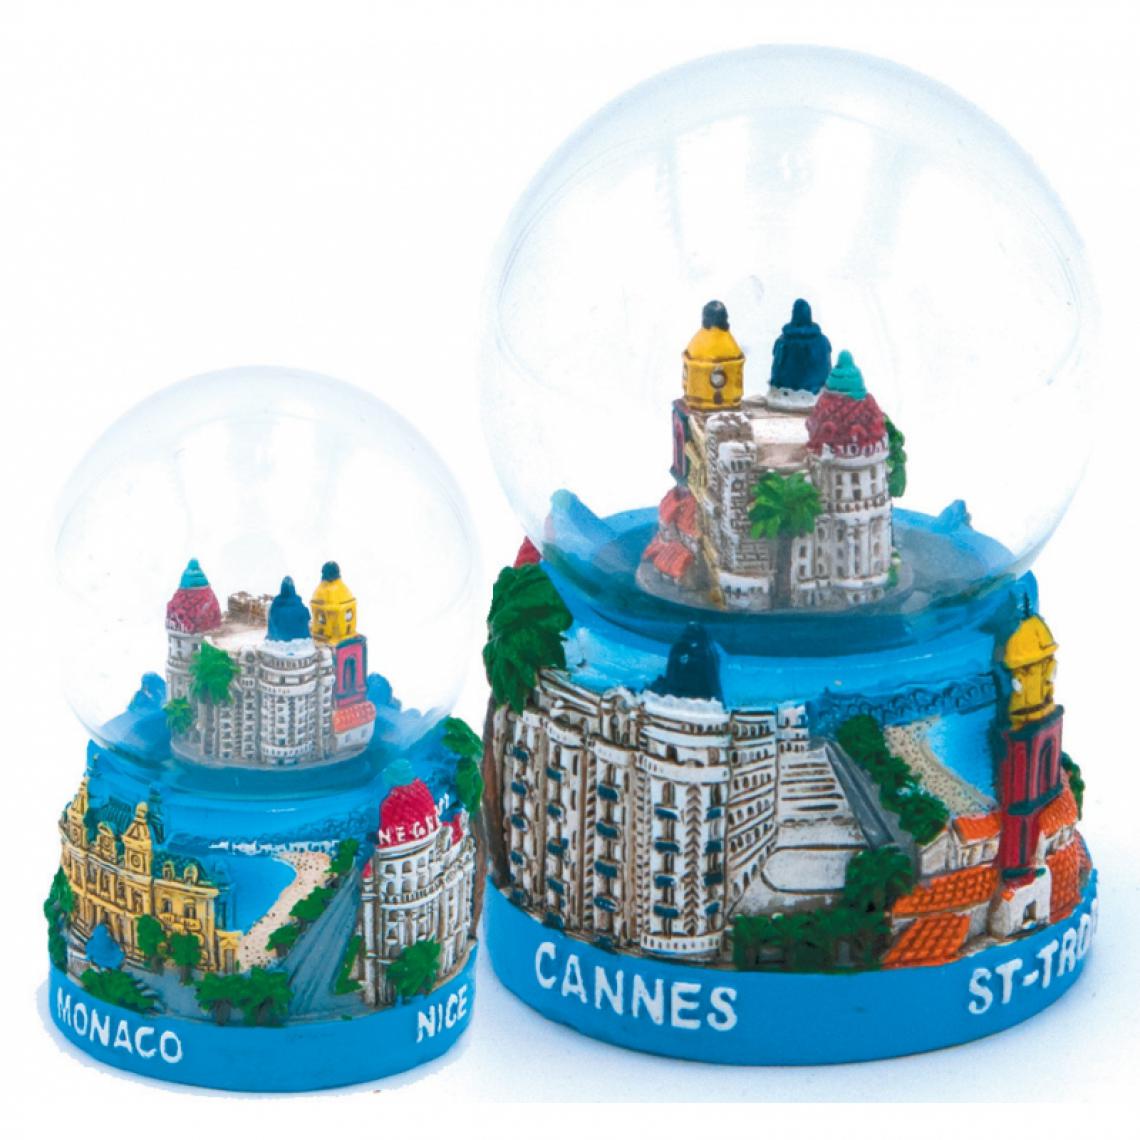 marque generique - Boule à neige Monaco,Nice,Cannes et Saint tropez Grand modèle - Décorations de Noël